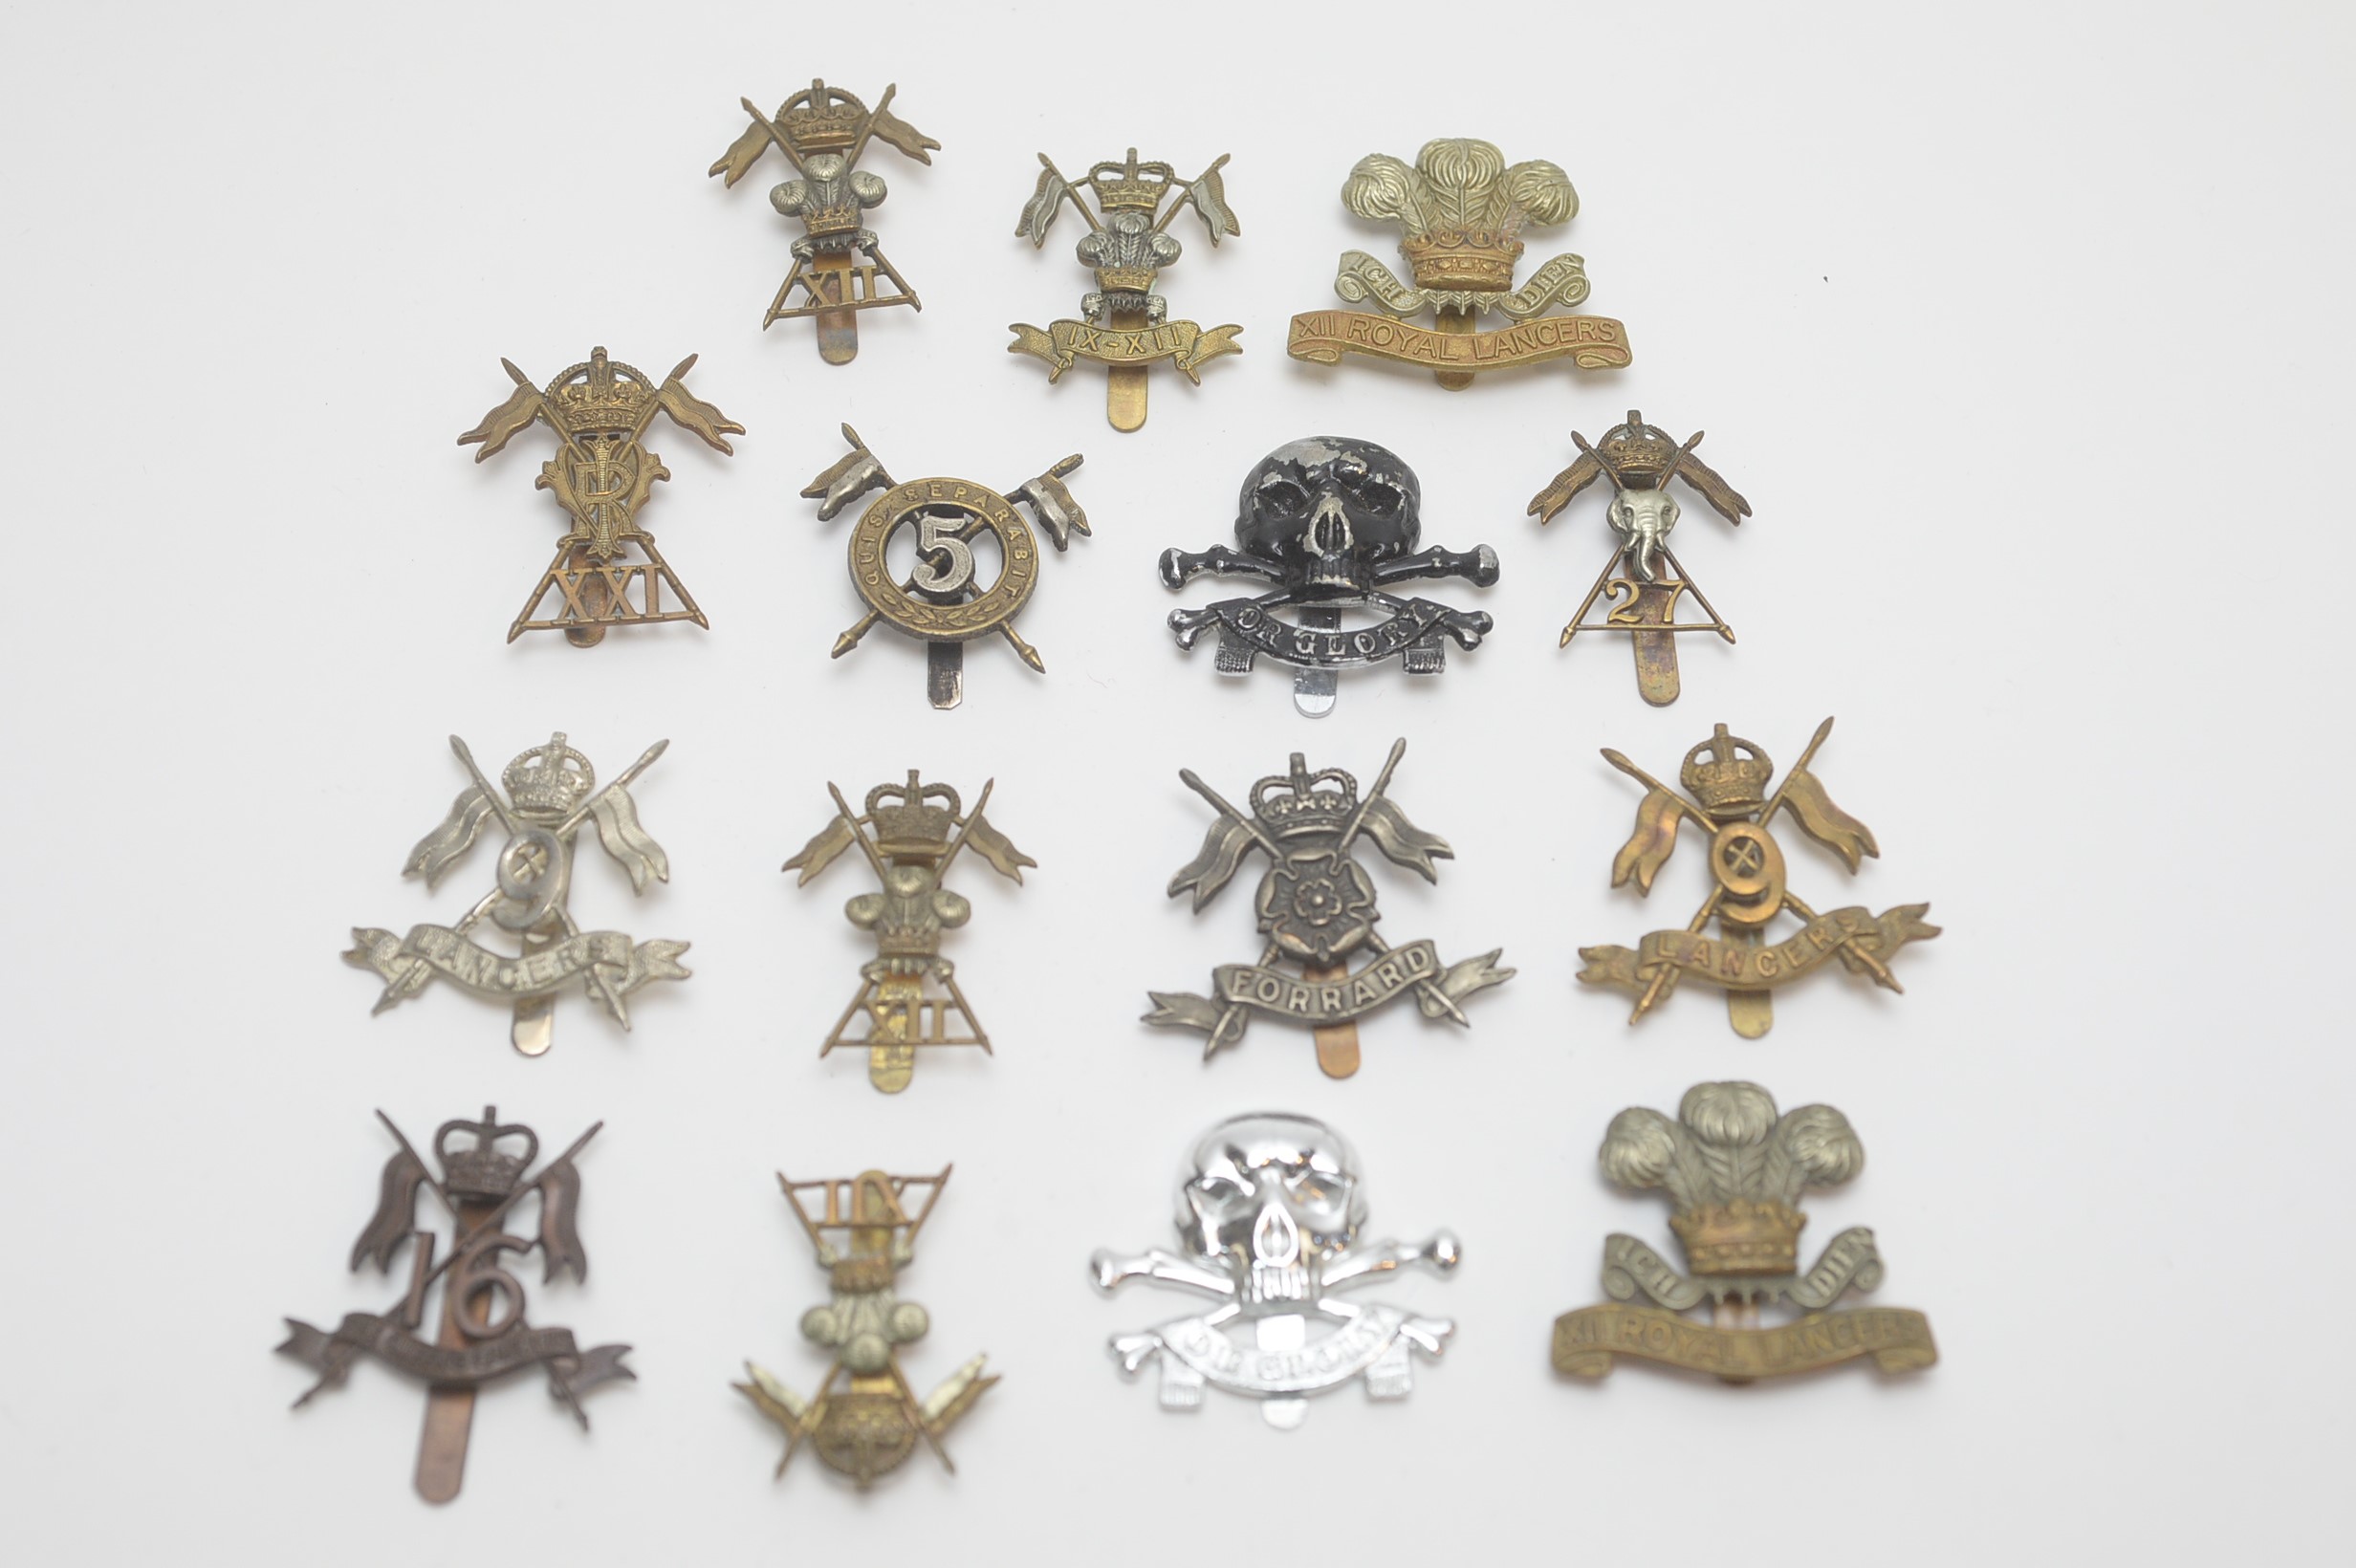 A collection of Lancers regimental cap badges